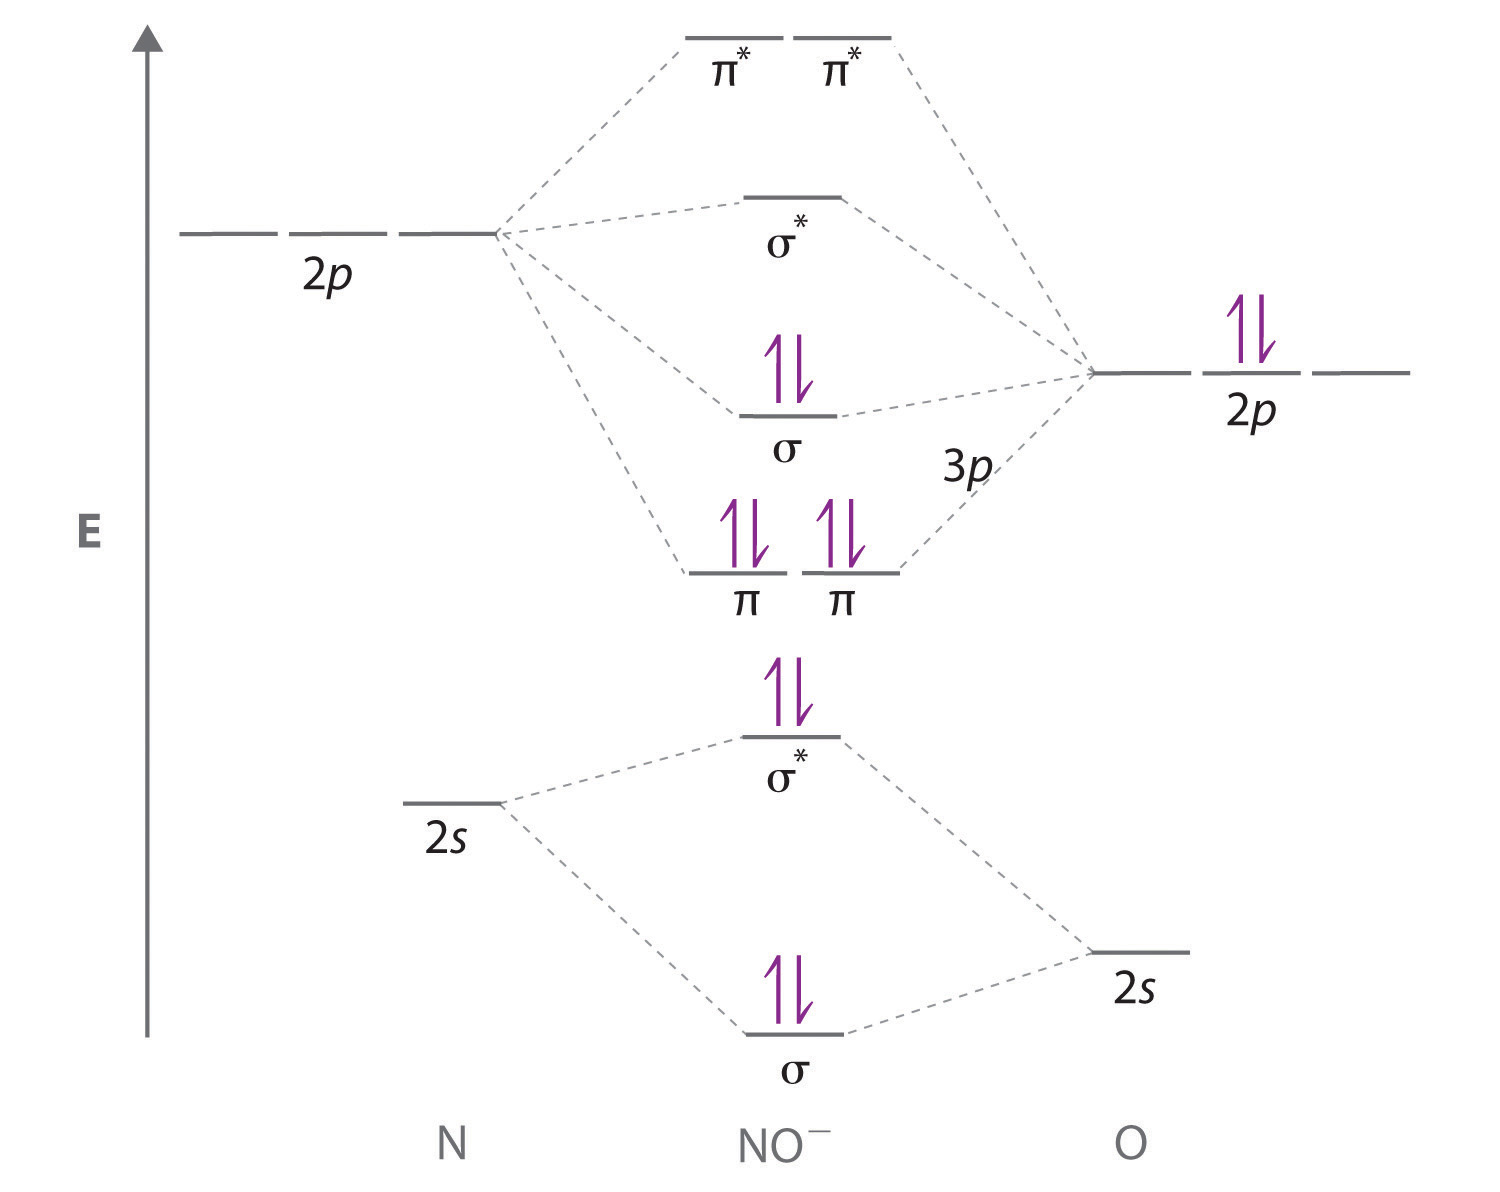 bn molecular orbital diagram